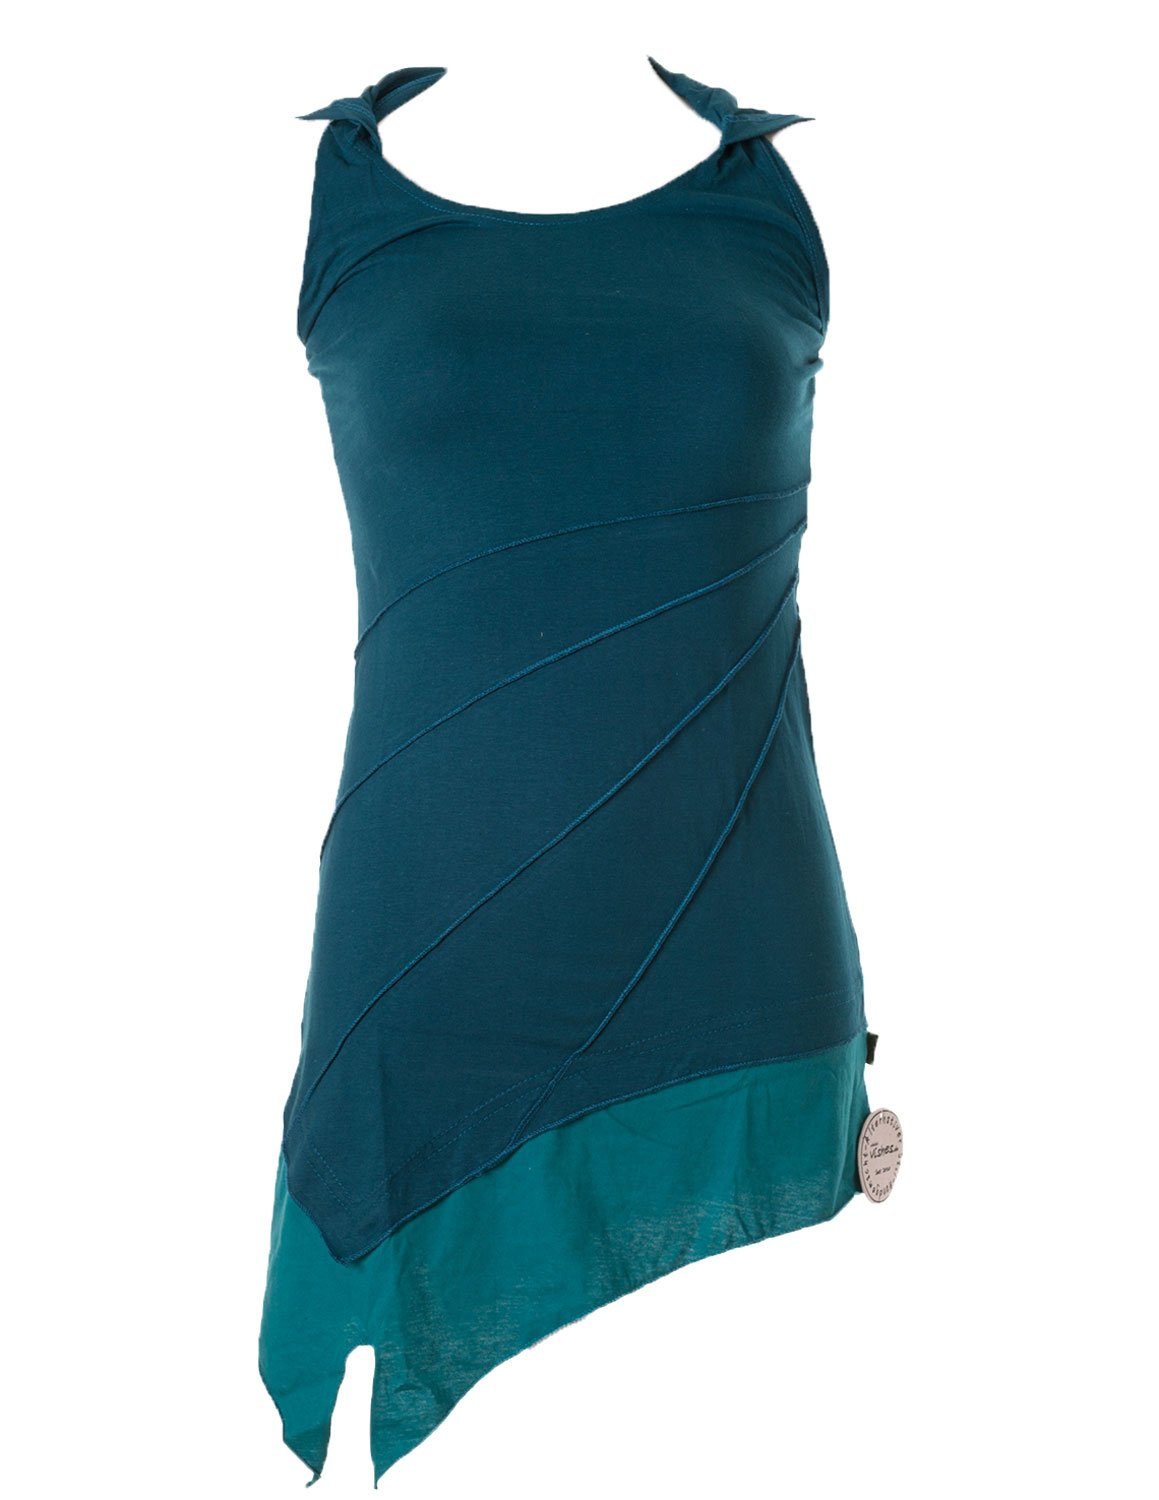 Vishes Neckholderkleid Mini Kleid Neckholder zweifarbig Zipfelkleid Hippie, Goa, Boho Elfen Style türkis